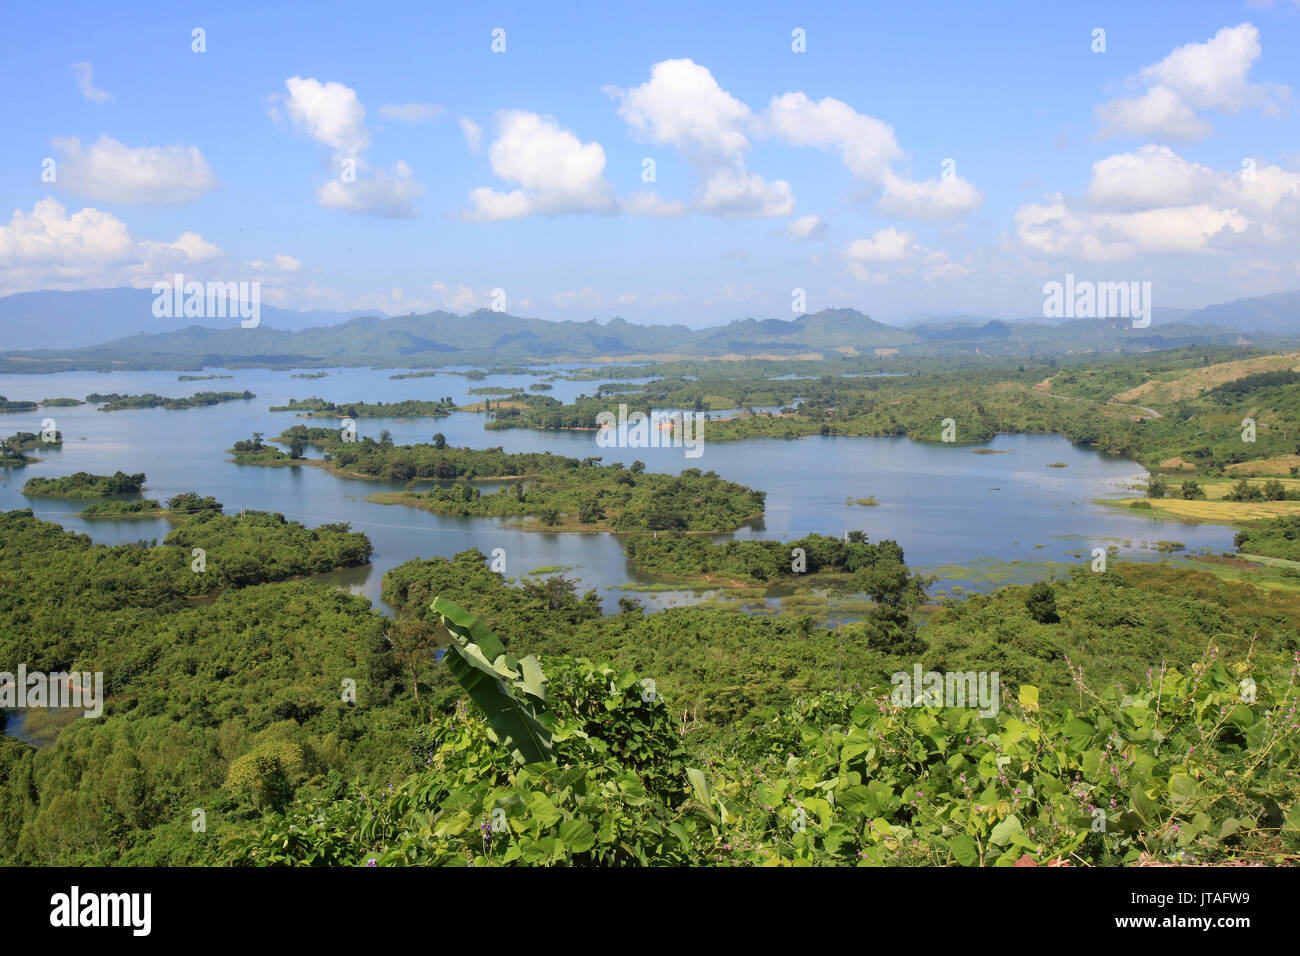 El paisaje, el lago y las islas de Nam Ngum, provincia de Vientiane, Laos, Indochina, en el sudeste de Asia, Asia Foto de stock